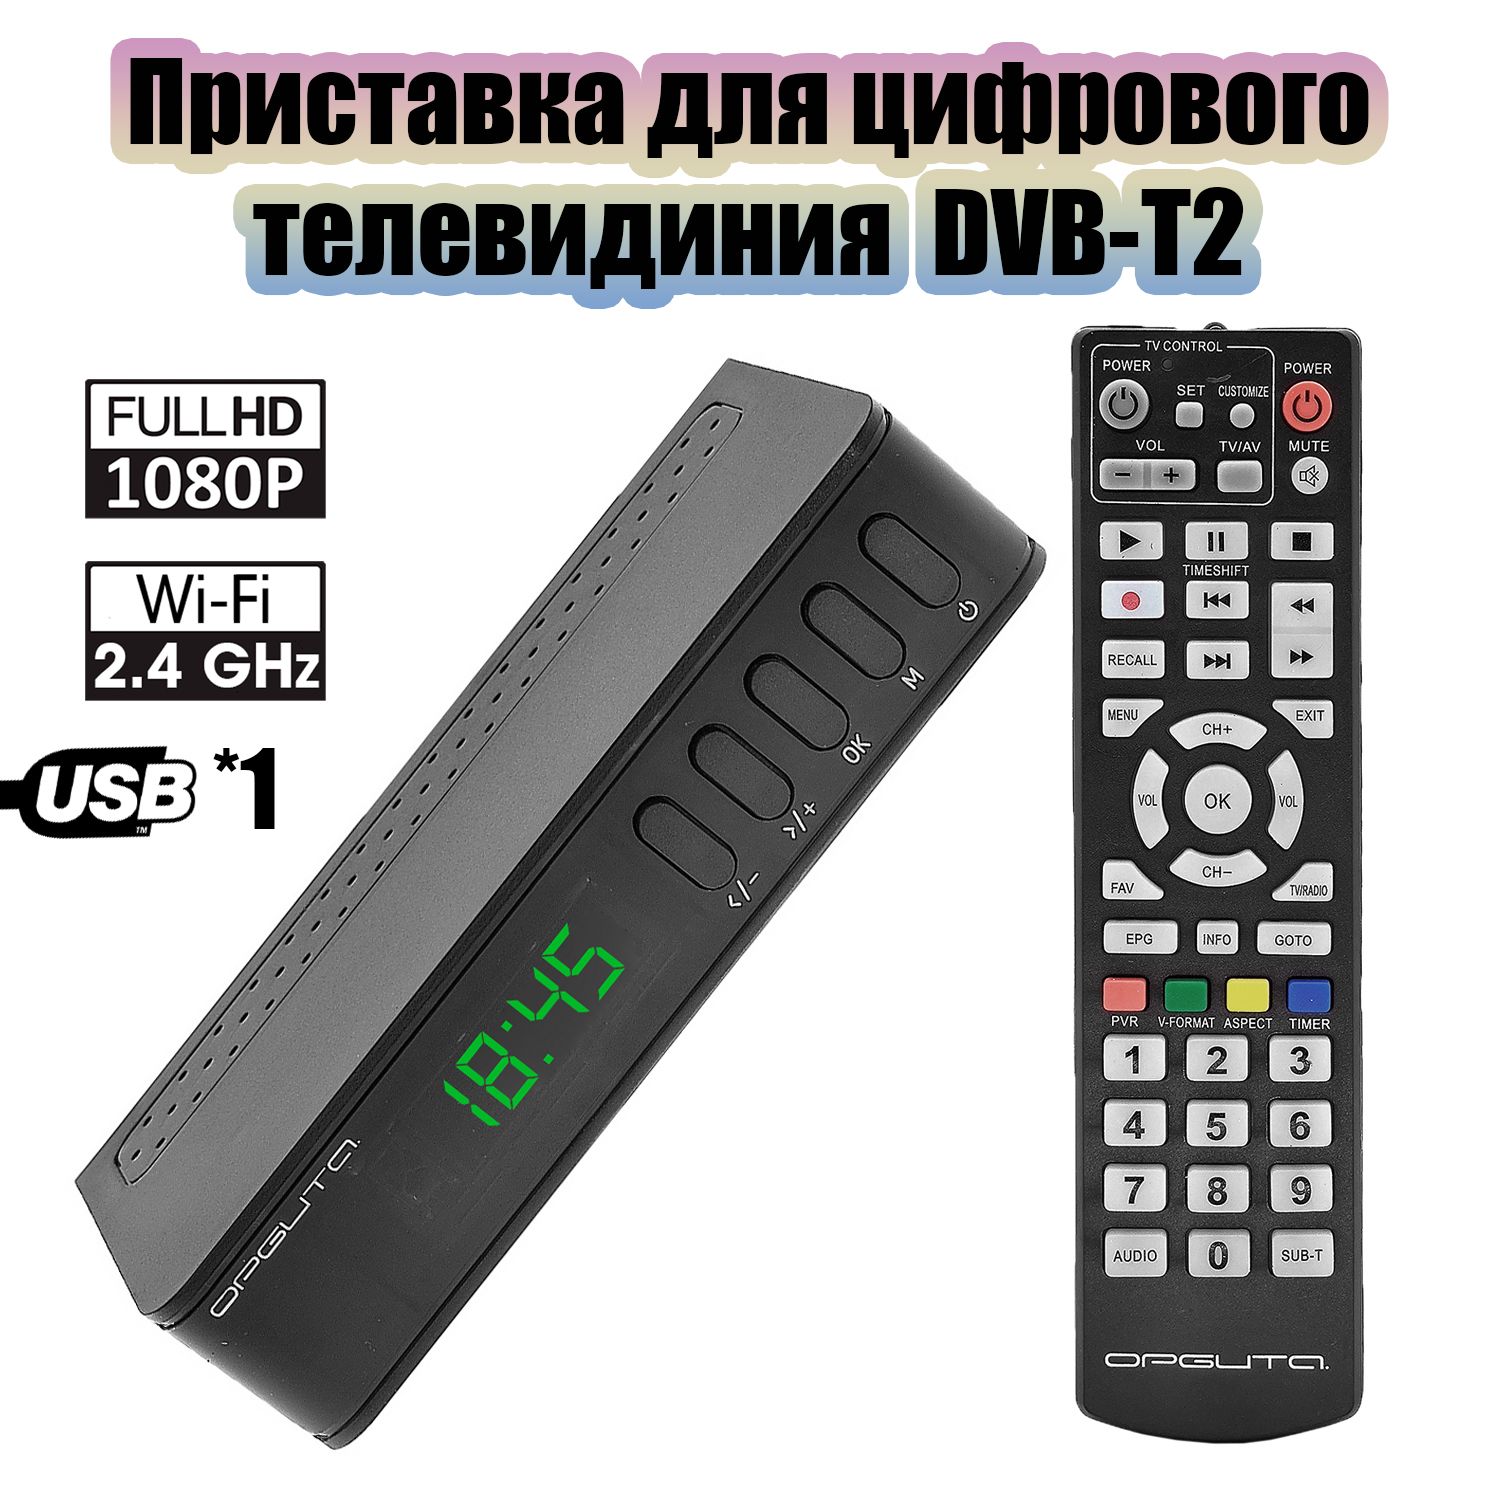 ПриставкадляцифровогоТВсWi-FiОрбитаOT-DVB23